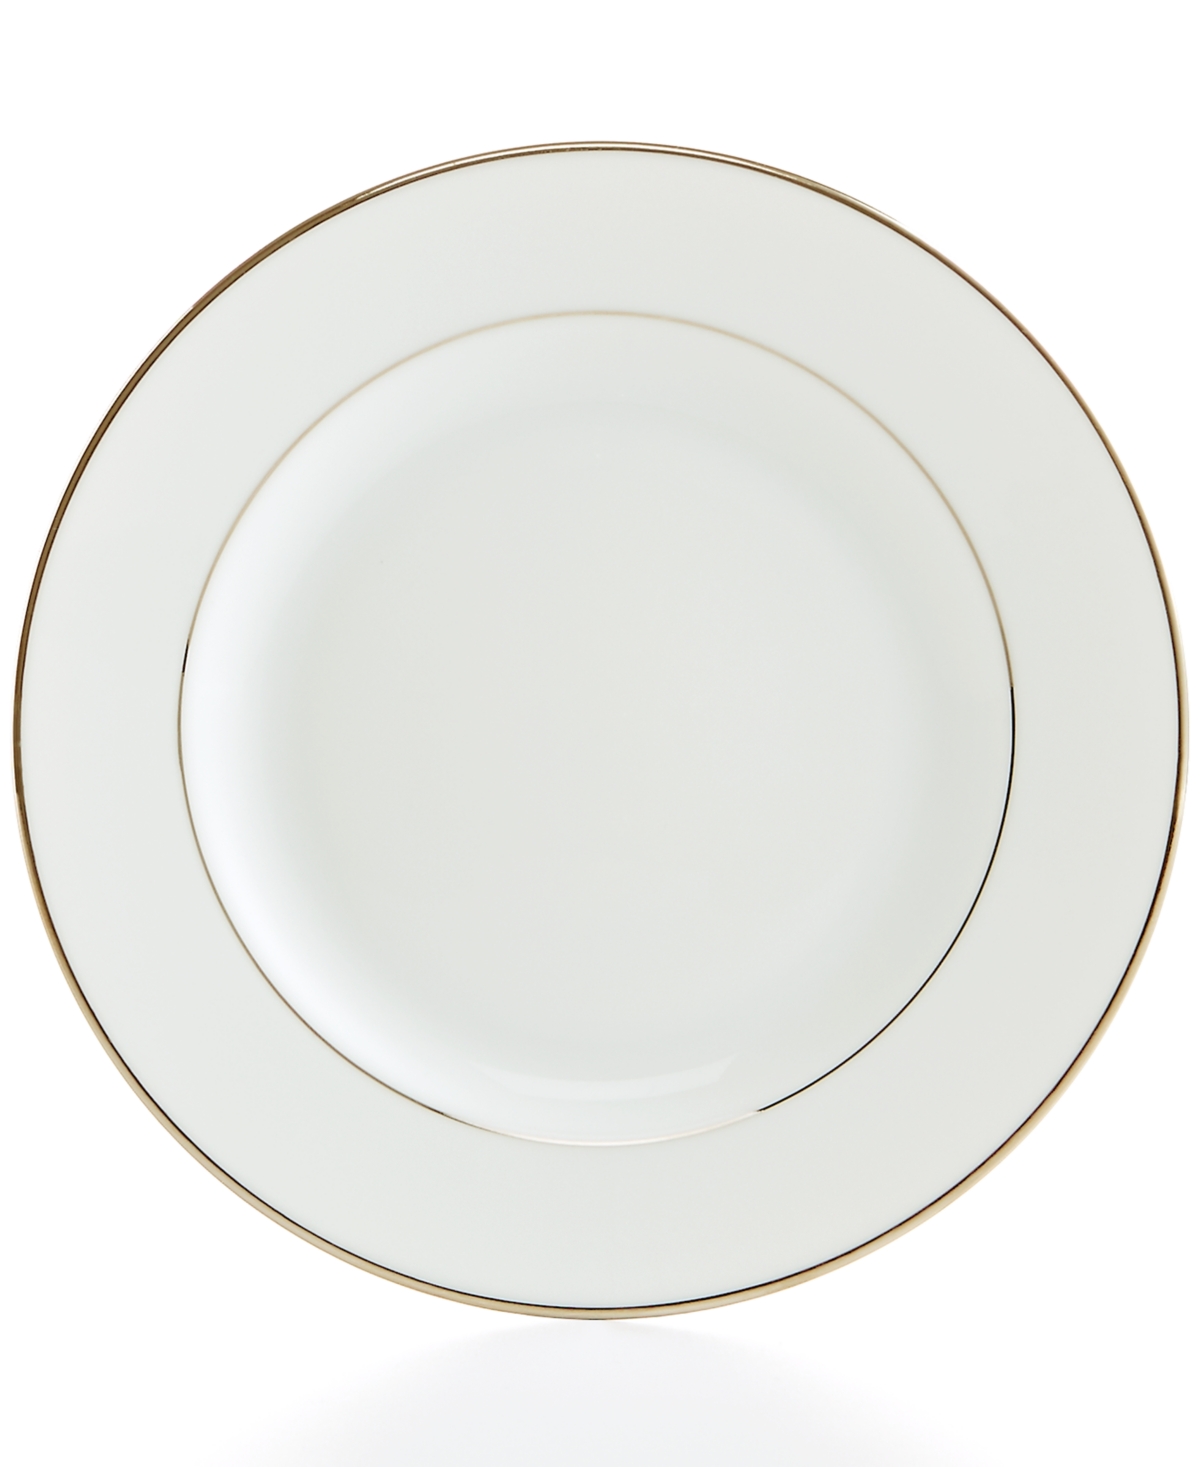 Bernardaud Cristal Appetizer Plate